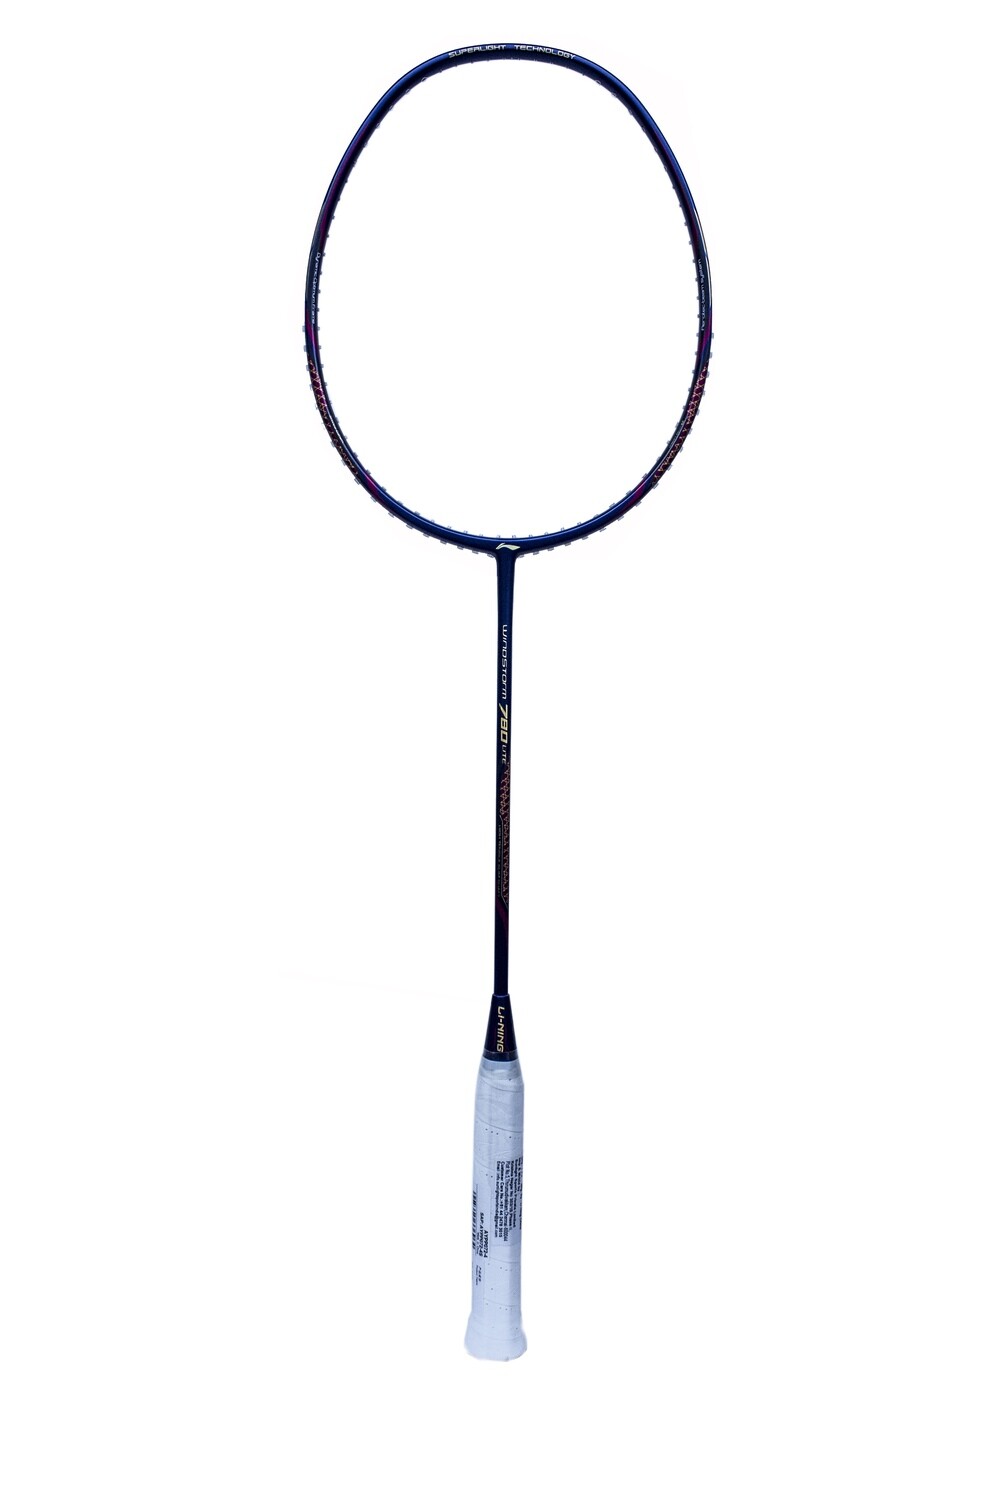 LI-NING Windstorm 780 Lite Badminton Racquet -